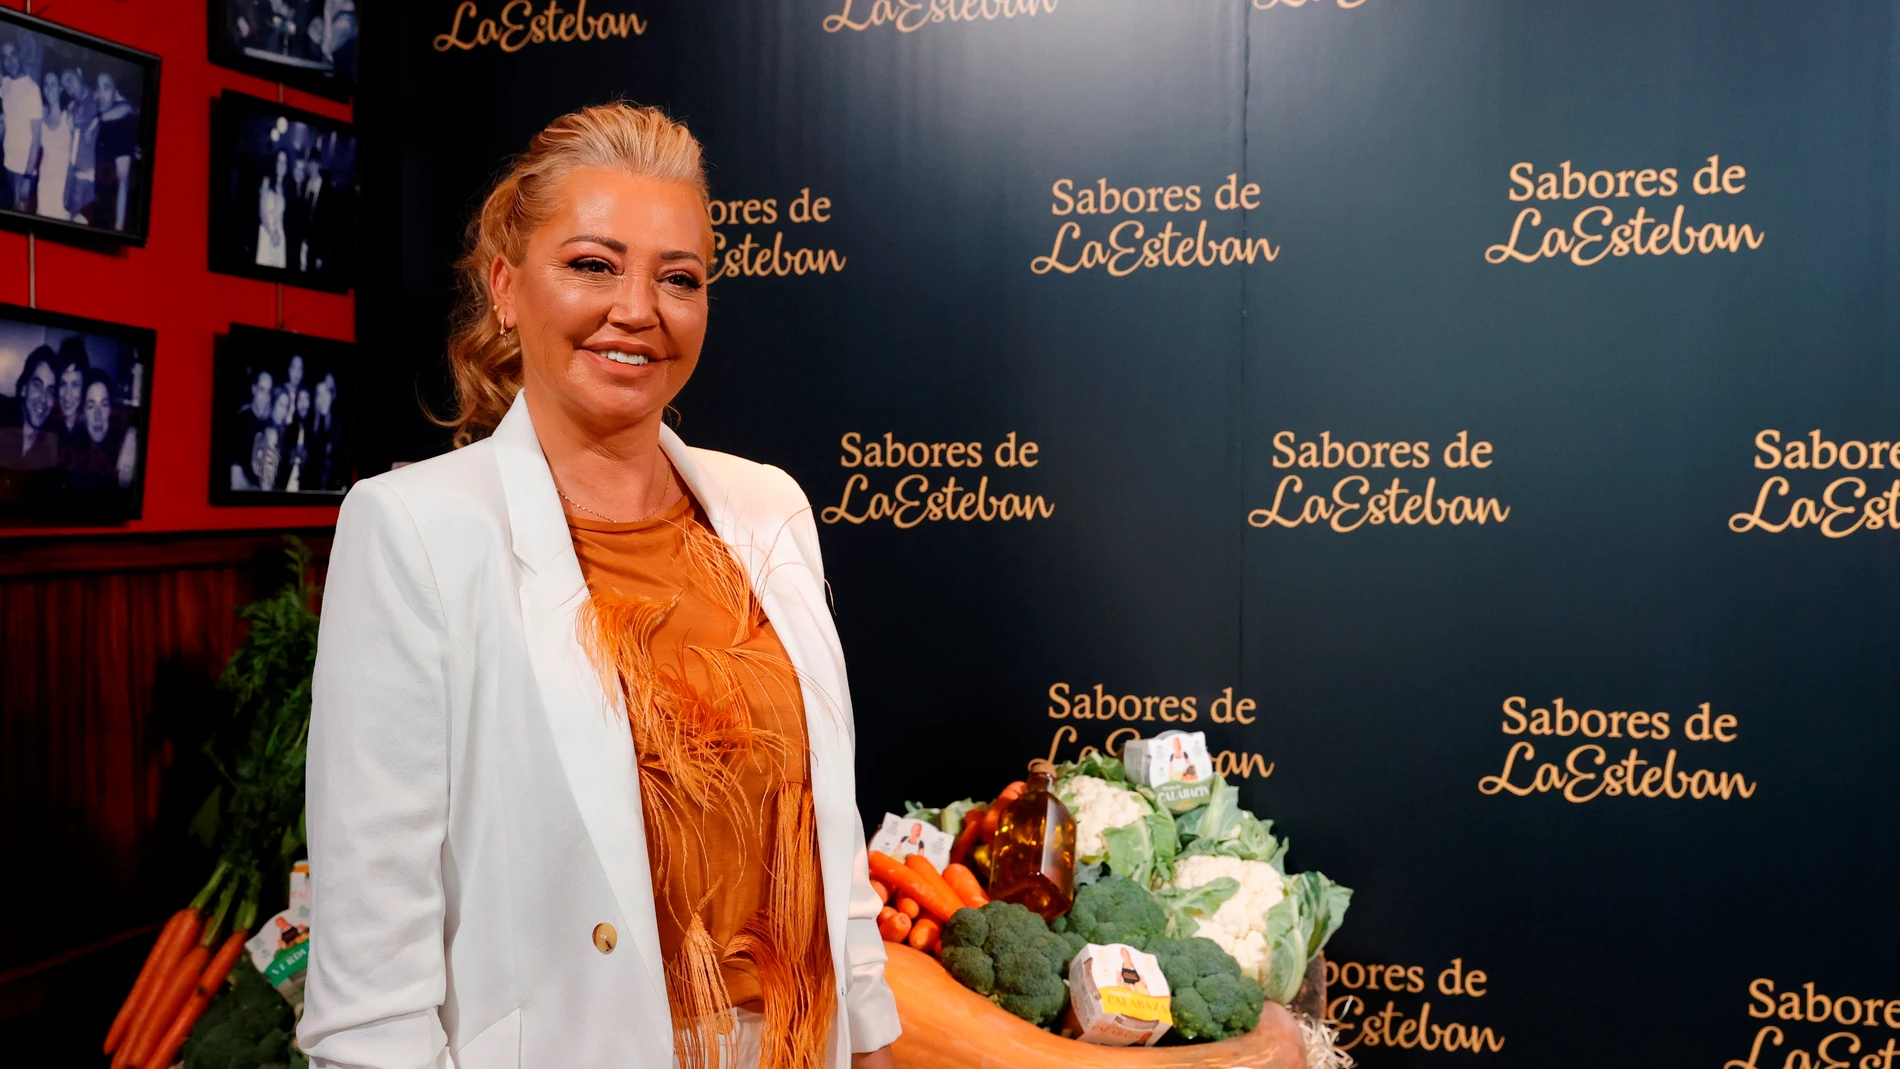 La colaboradora de televisión Belén Esteban presenta sus nuevos productos de Sabores de la Esteban en el Museo Chicote de Madrid.